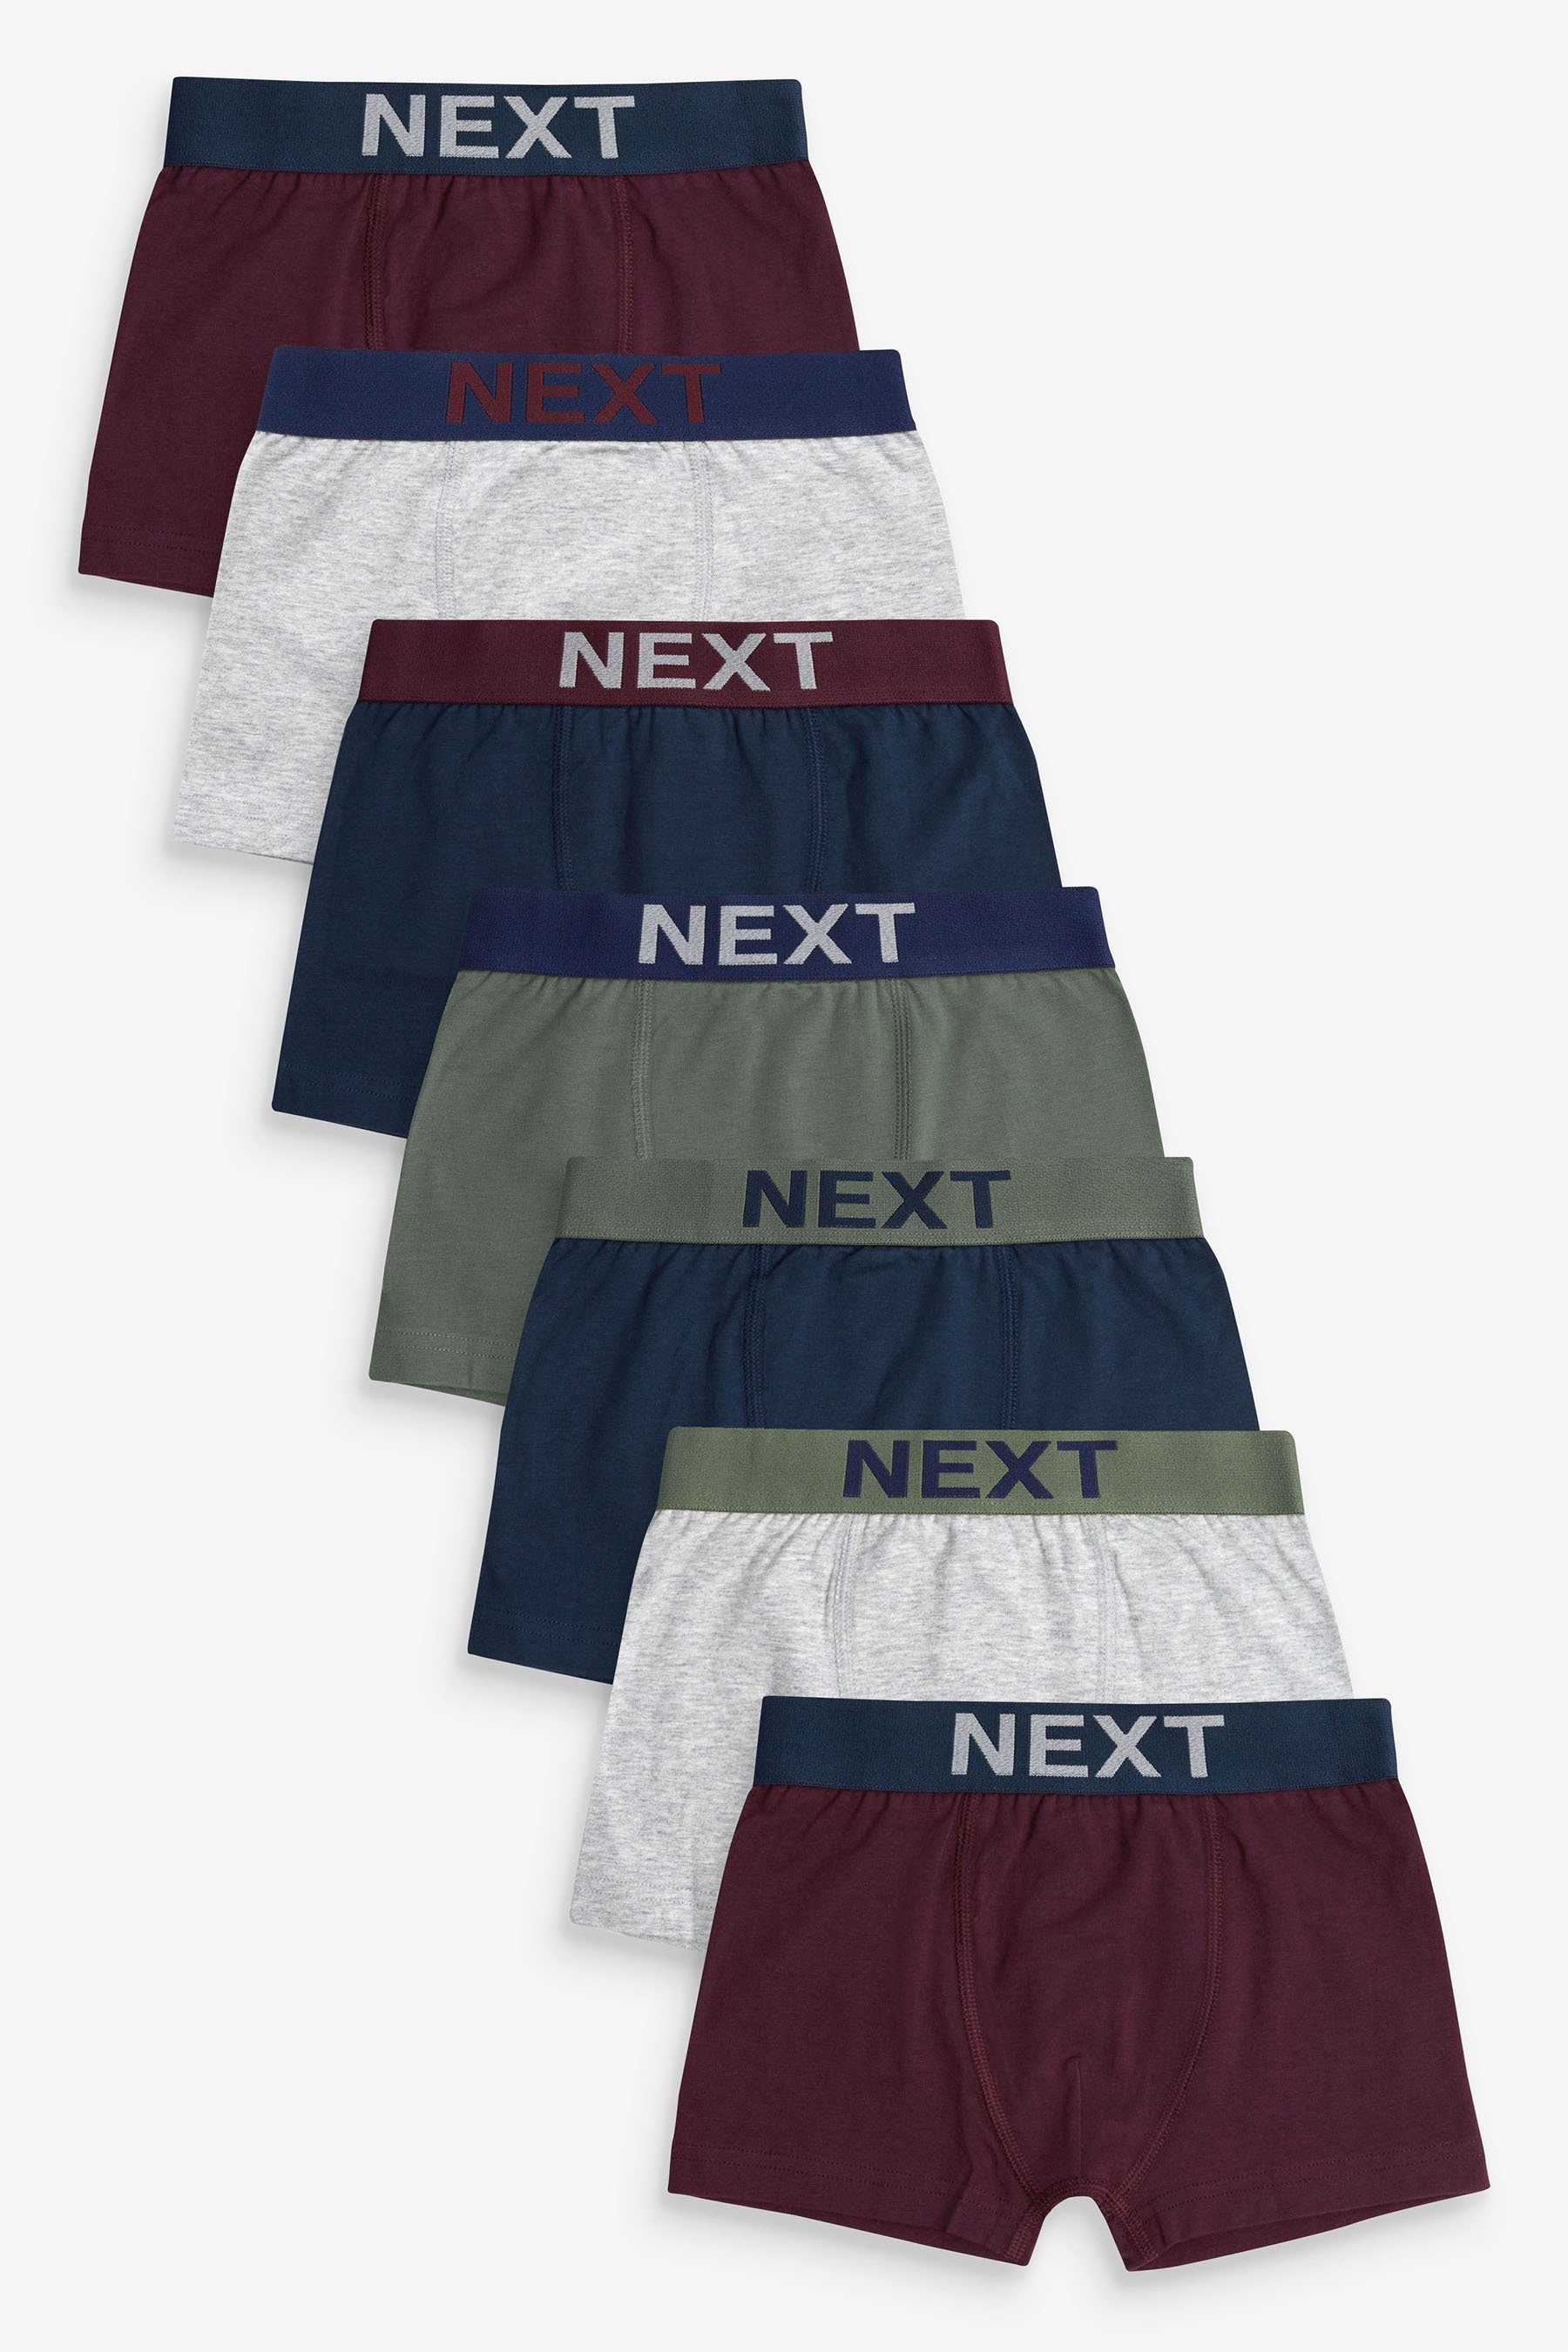 Next Trunk Unterhosen, 7er-Pack (7-St) Plum/Navy